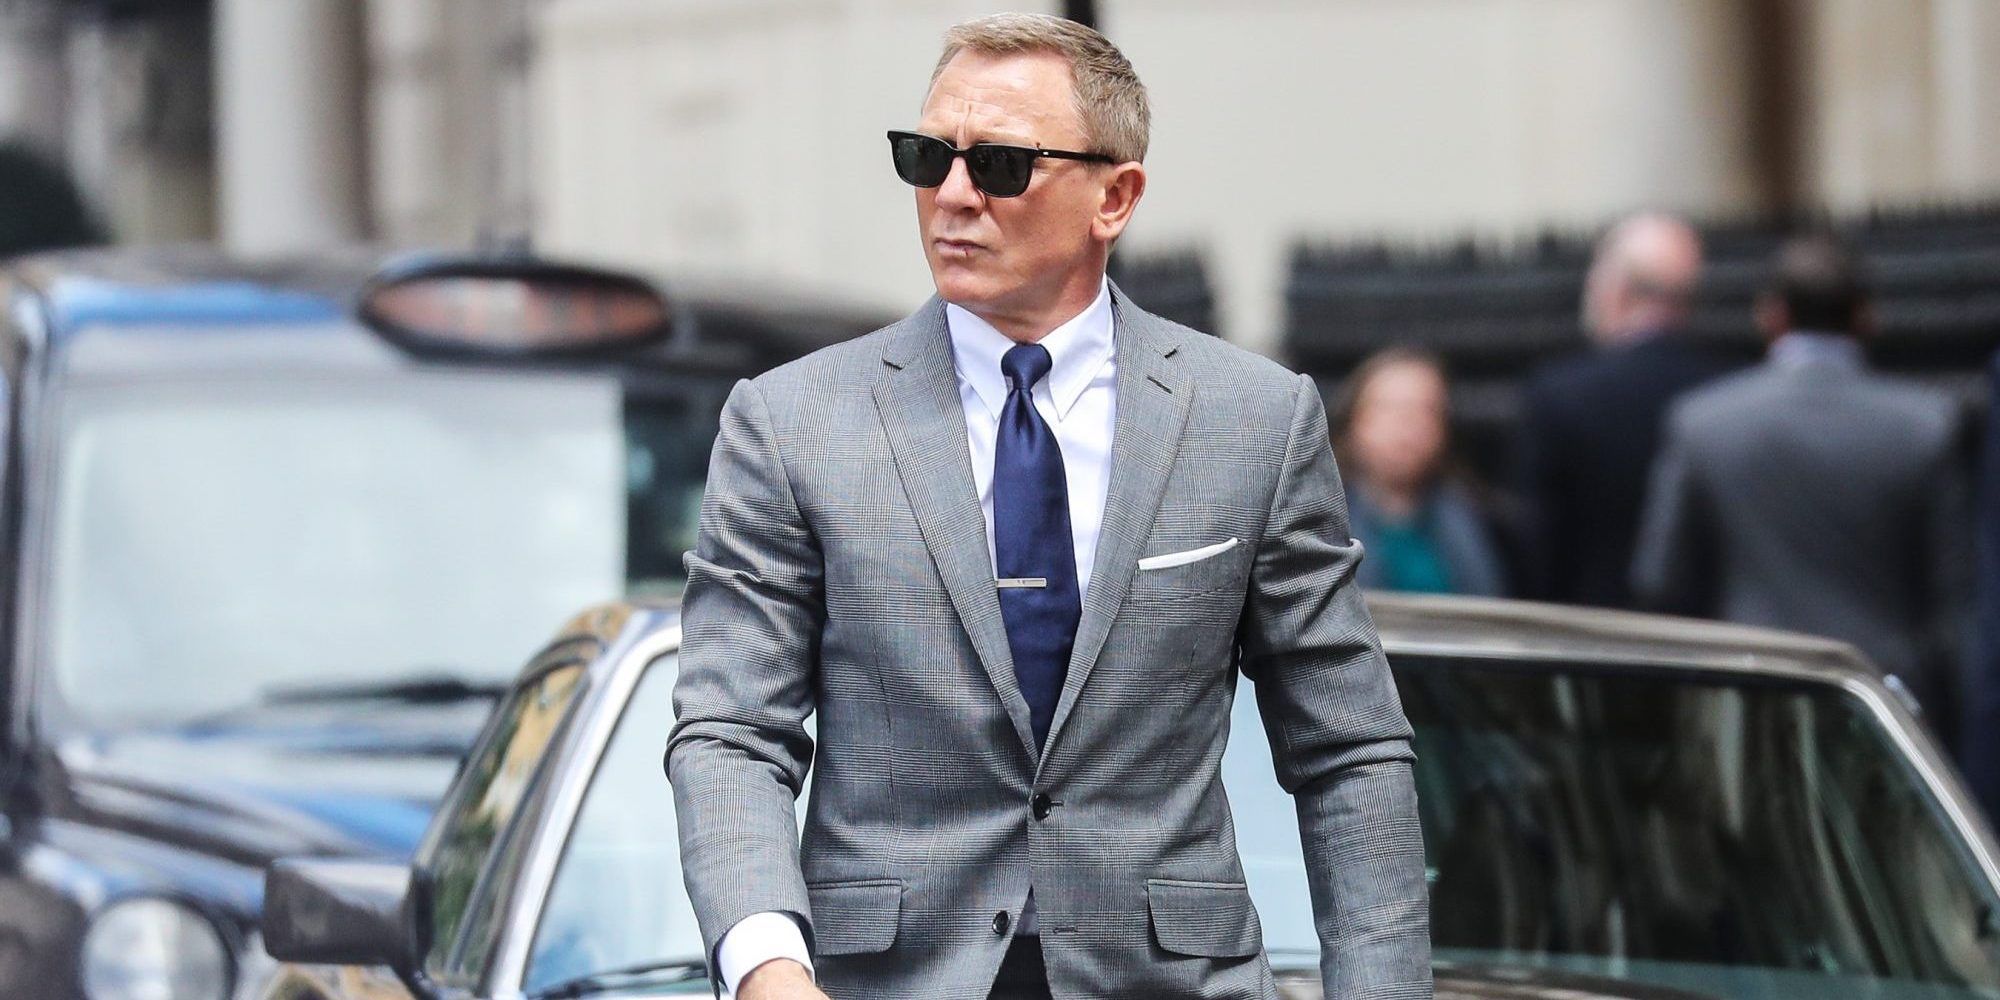 Daniel Craig wearing a grey suit as James Bond